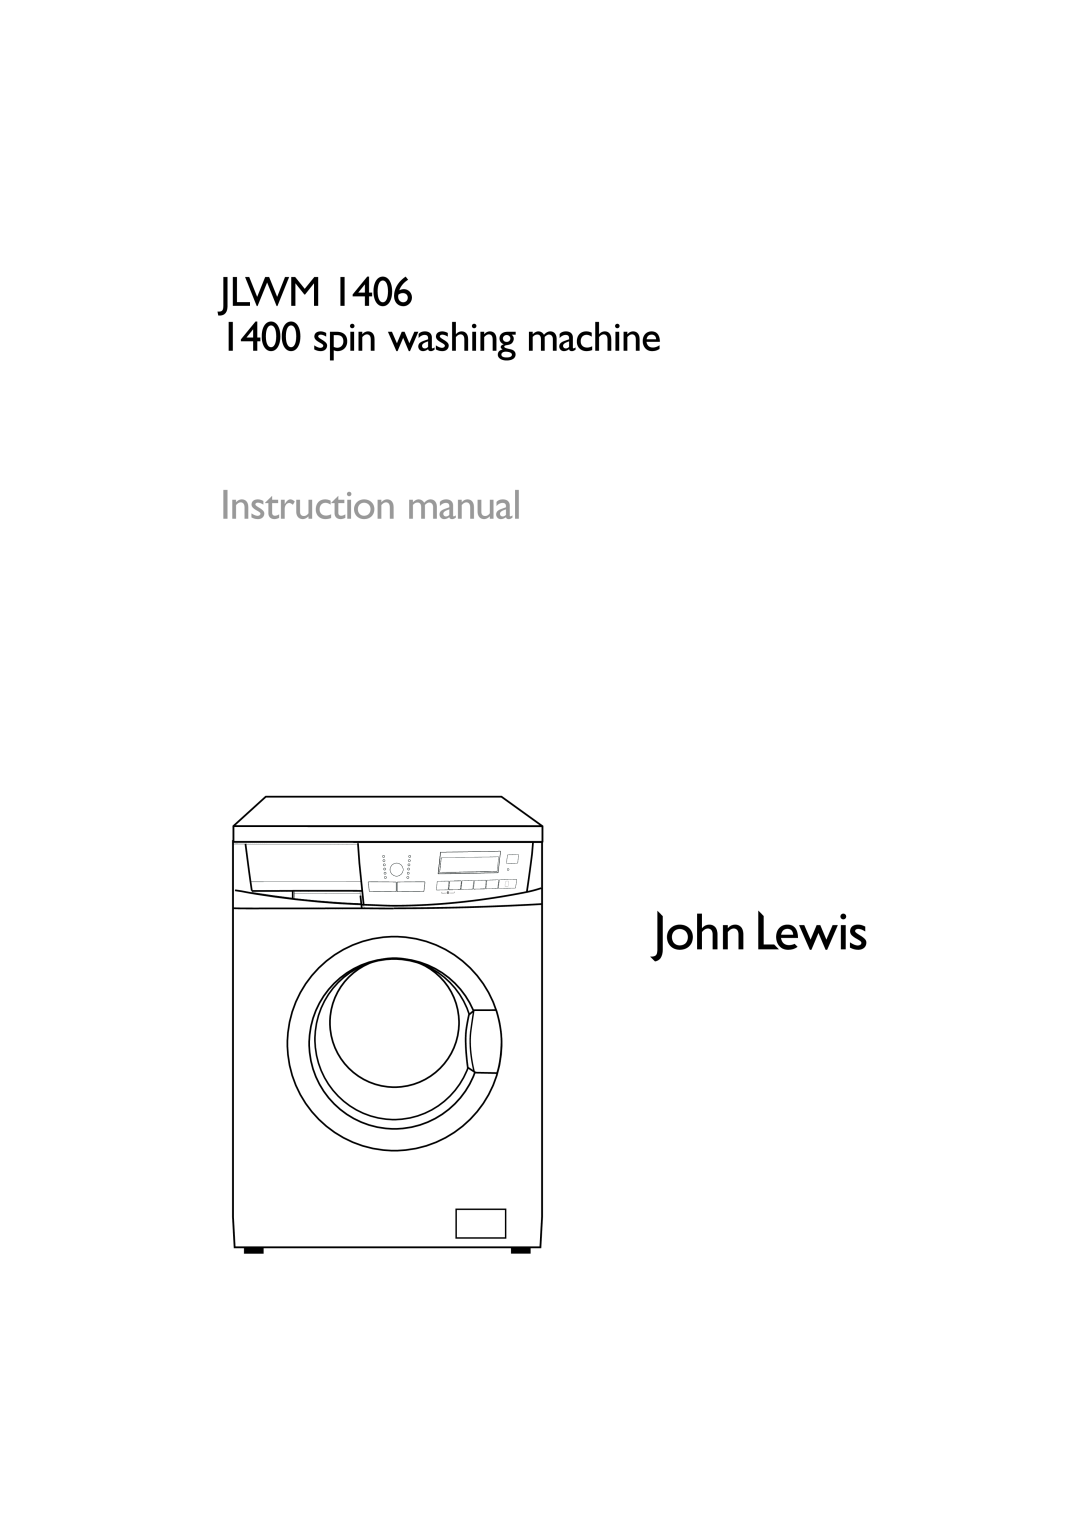 John Lewis JLWM 1406 instruction manual JLWM 1400 spin washing machine, Instruction manual 